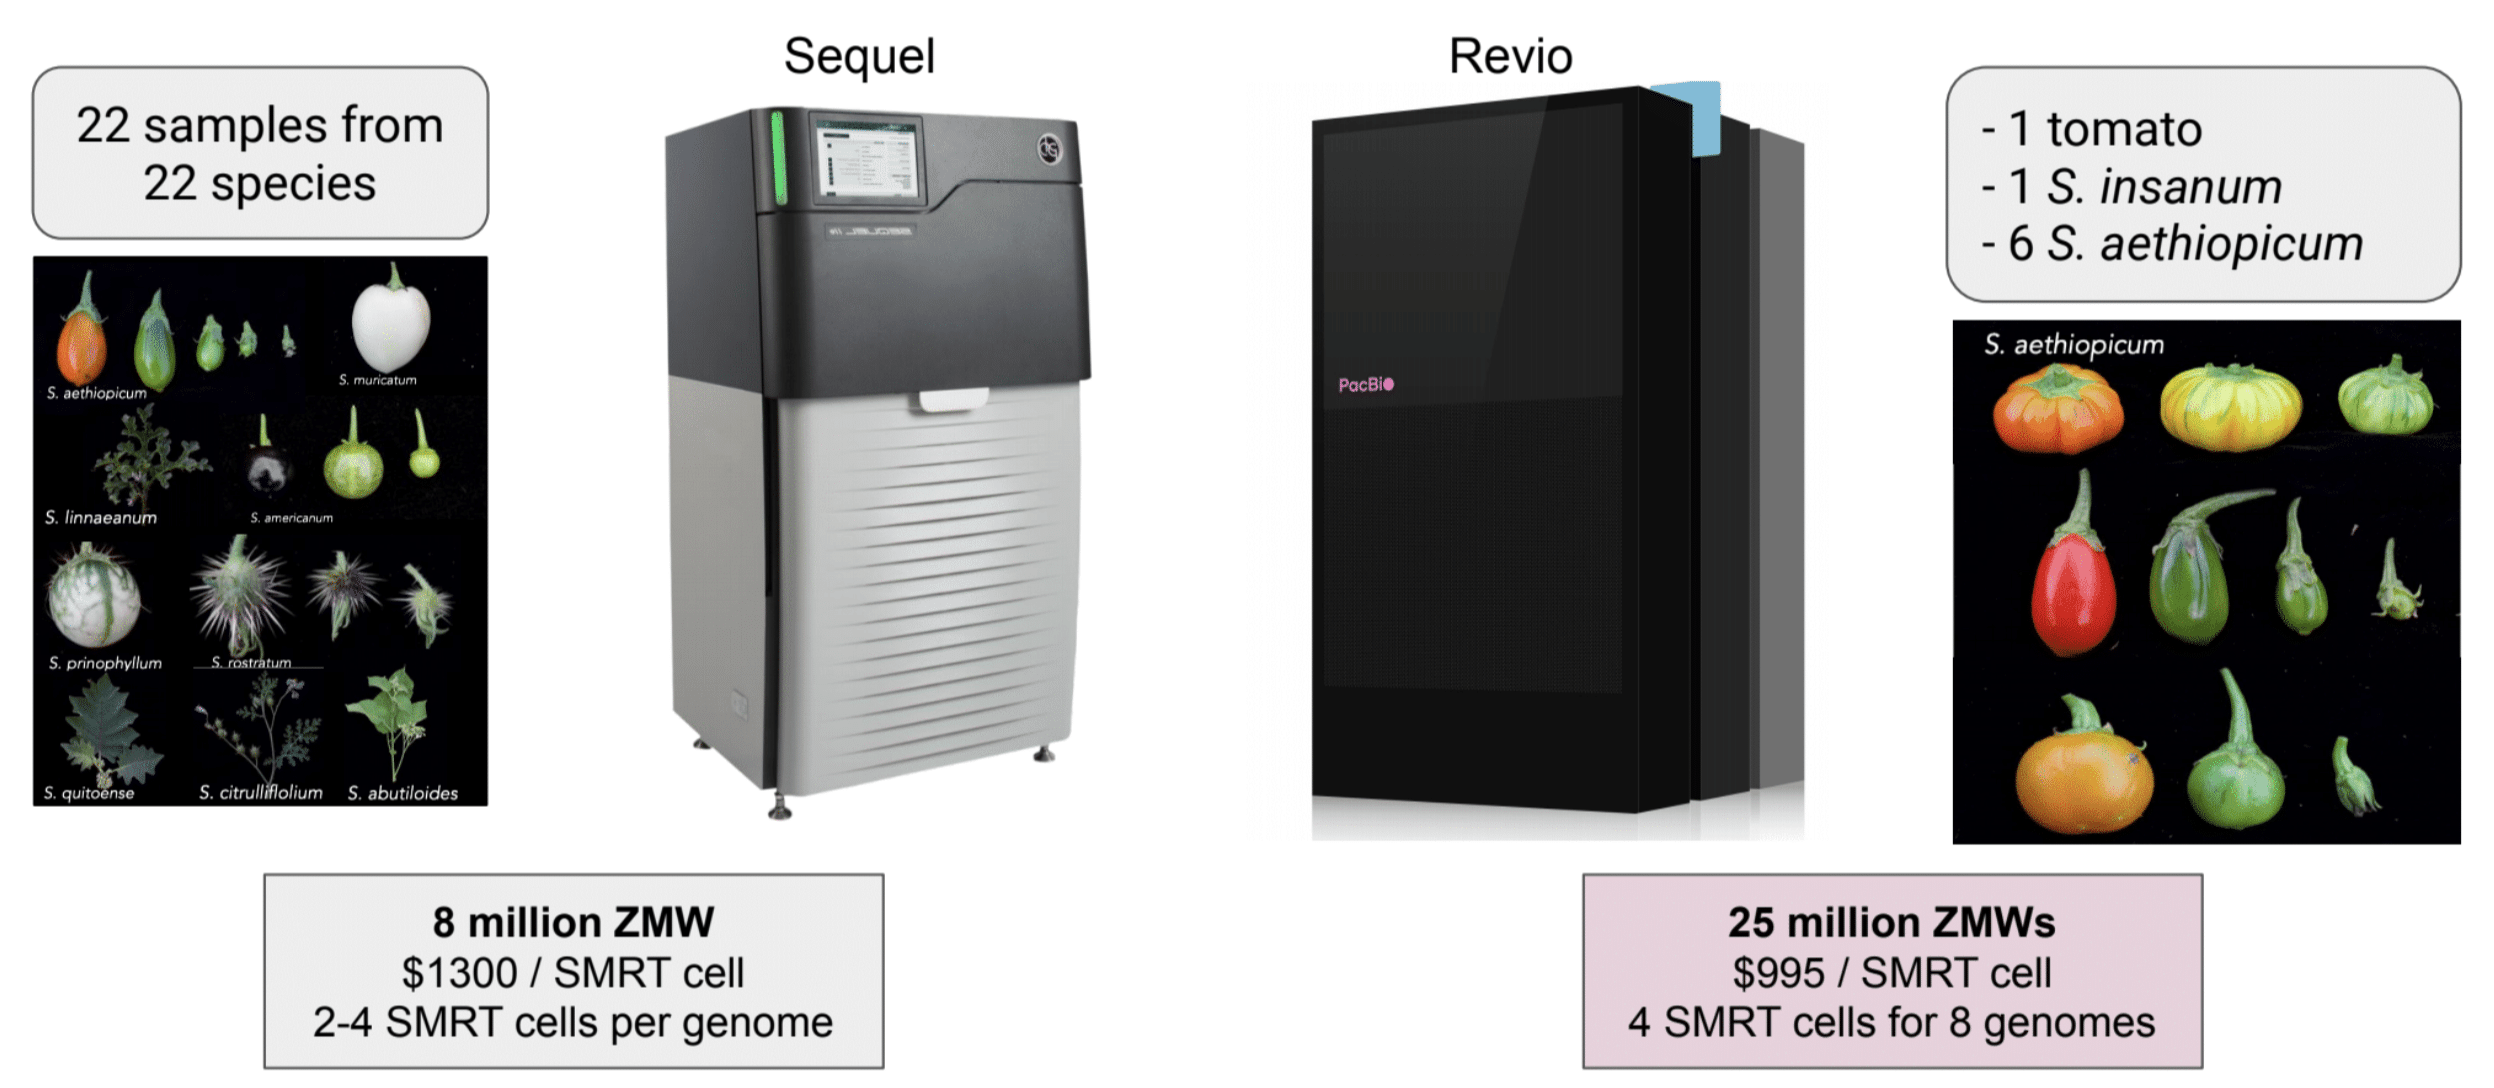 Sequencing Revio vs. Sequel